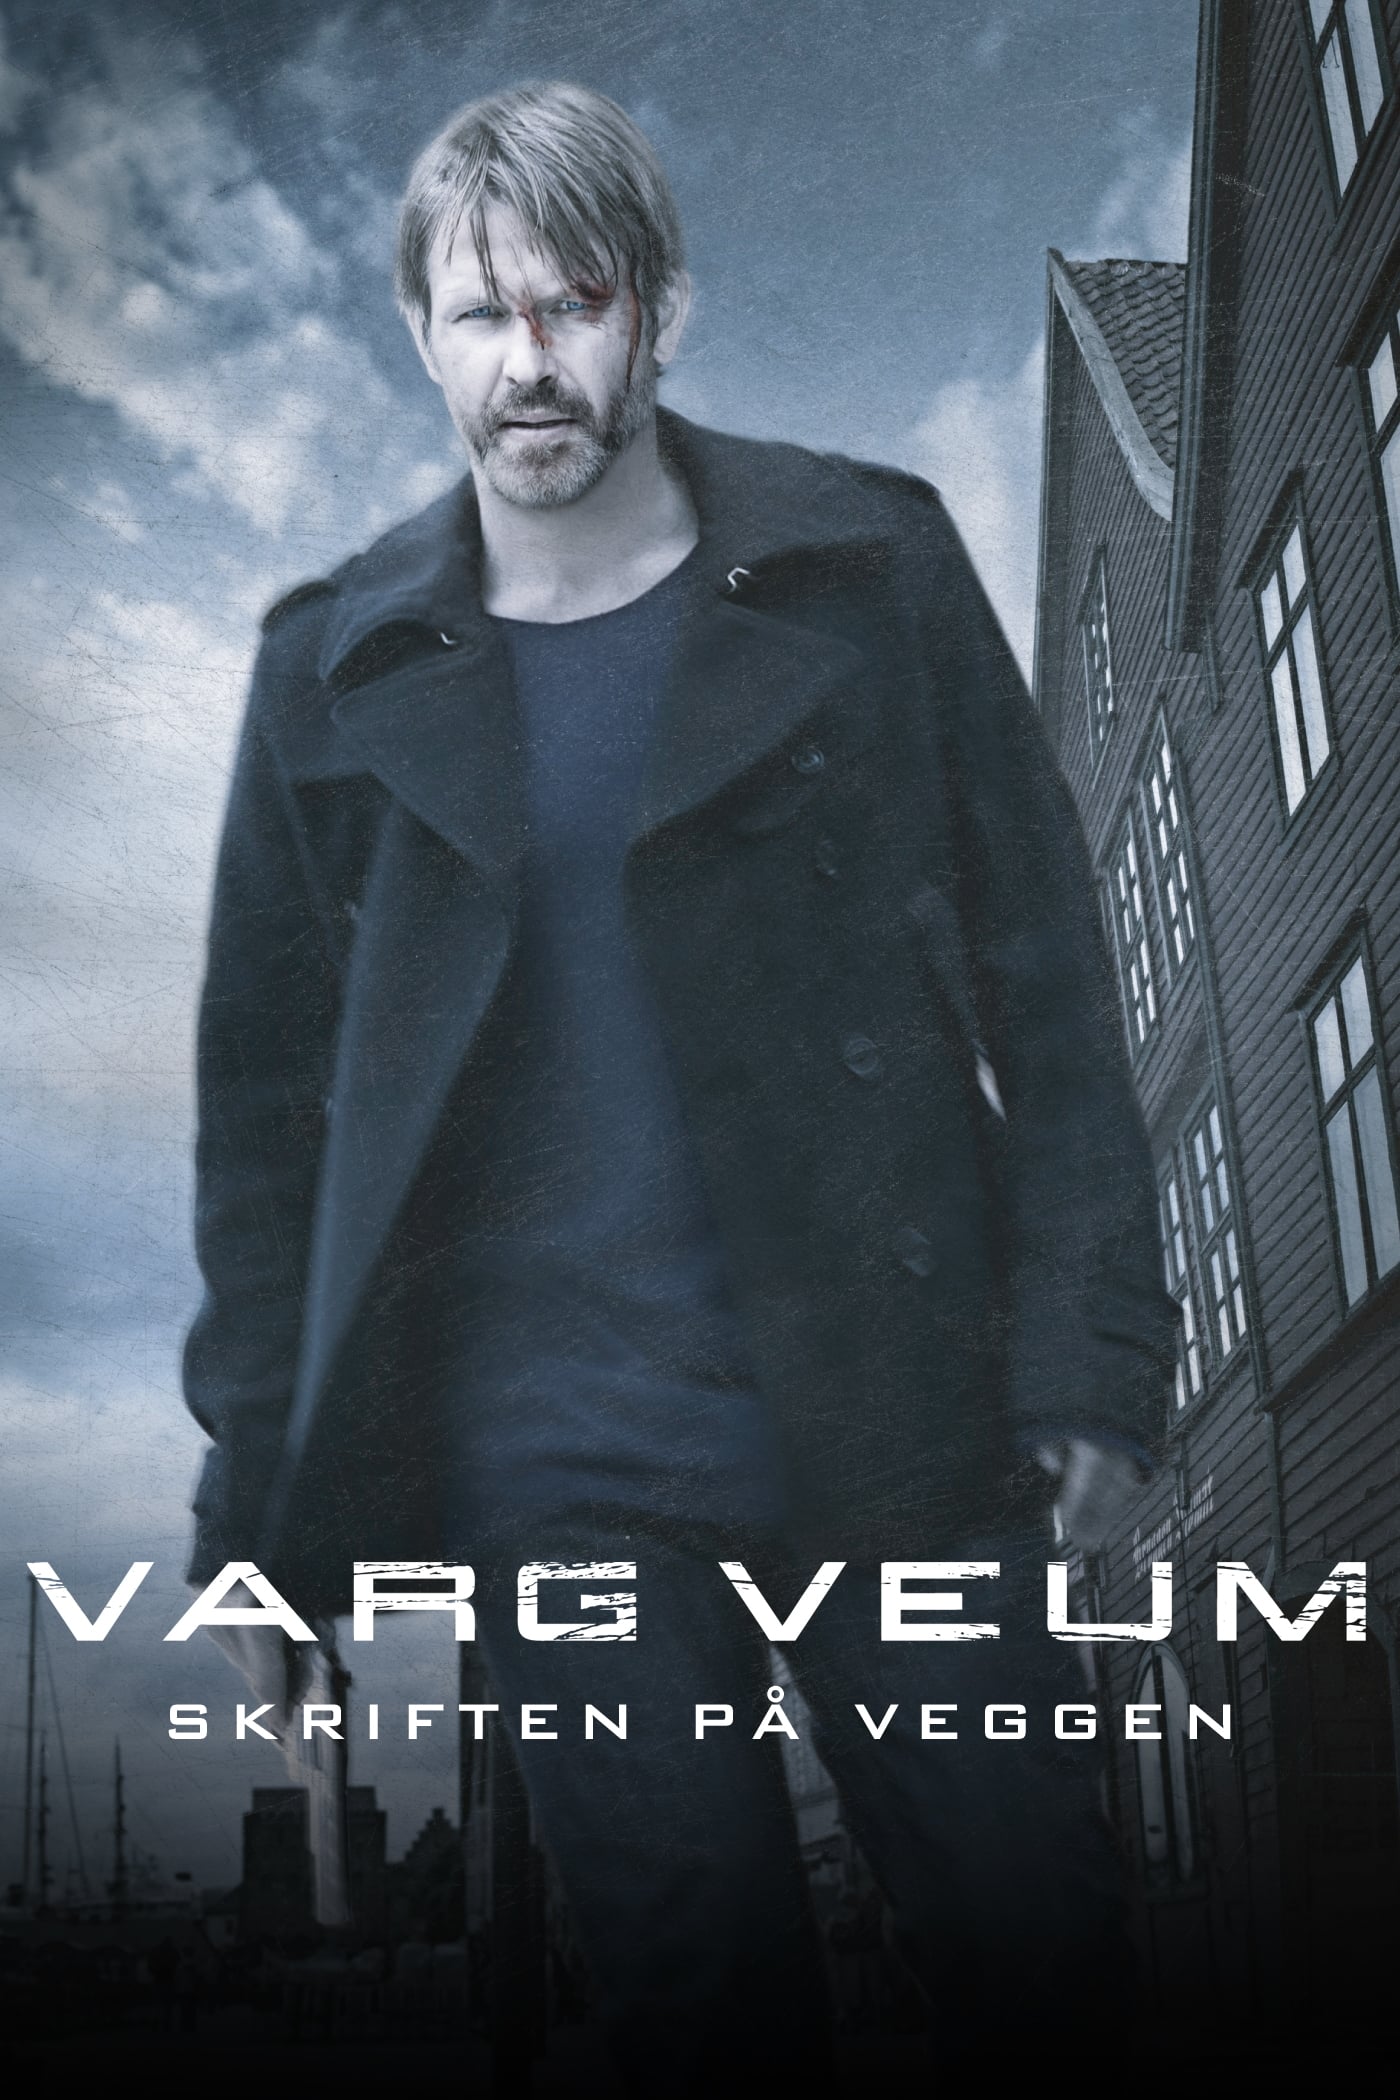 Caratula de VARG VEUM - SKRIFTEN PÅ VEGGEN (Varg Veum - El mensaje en la pared) 